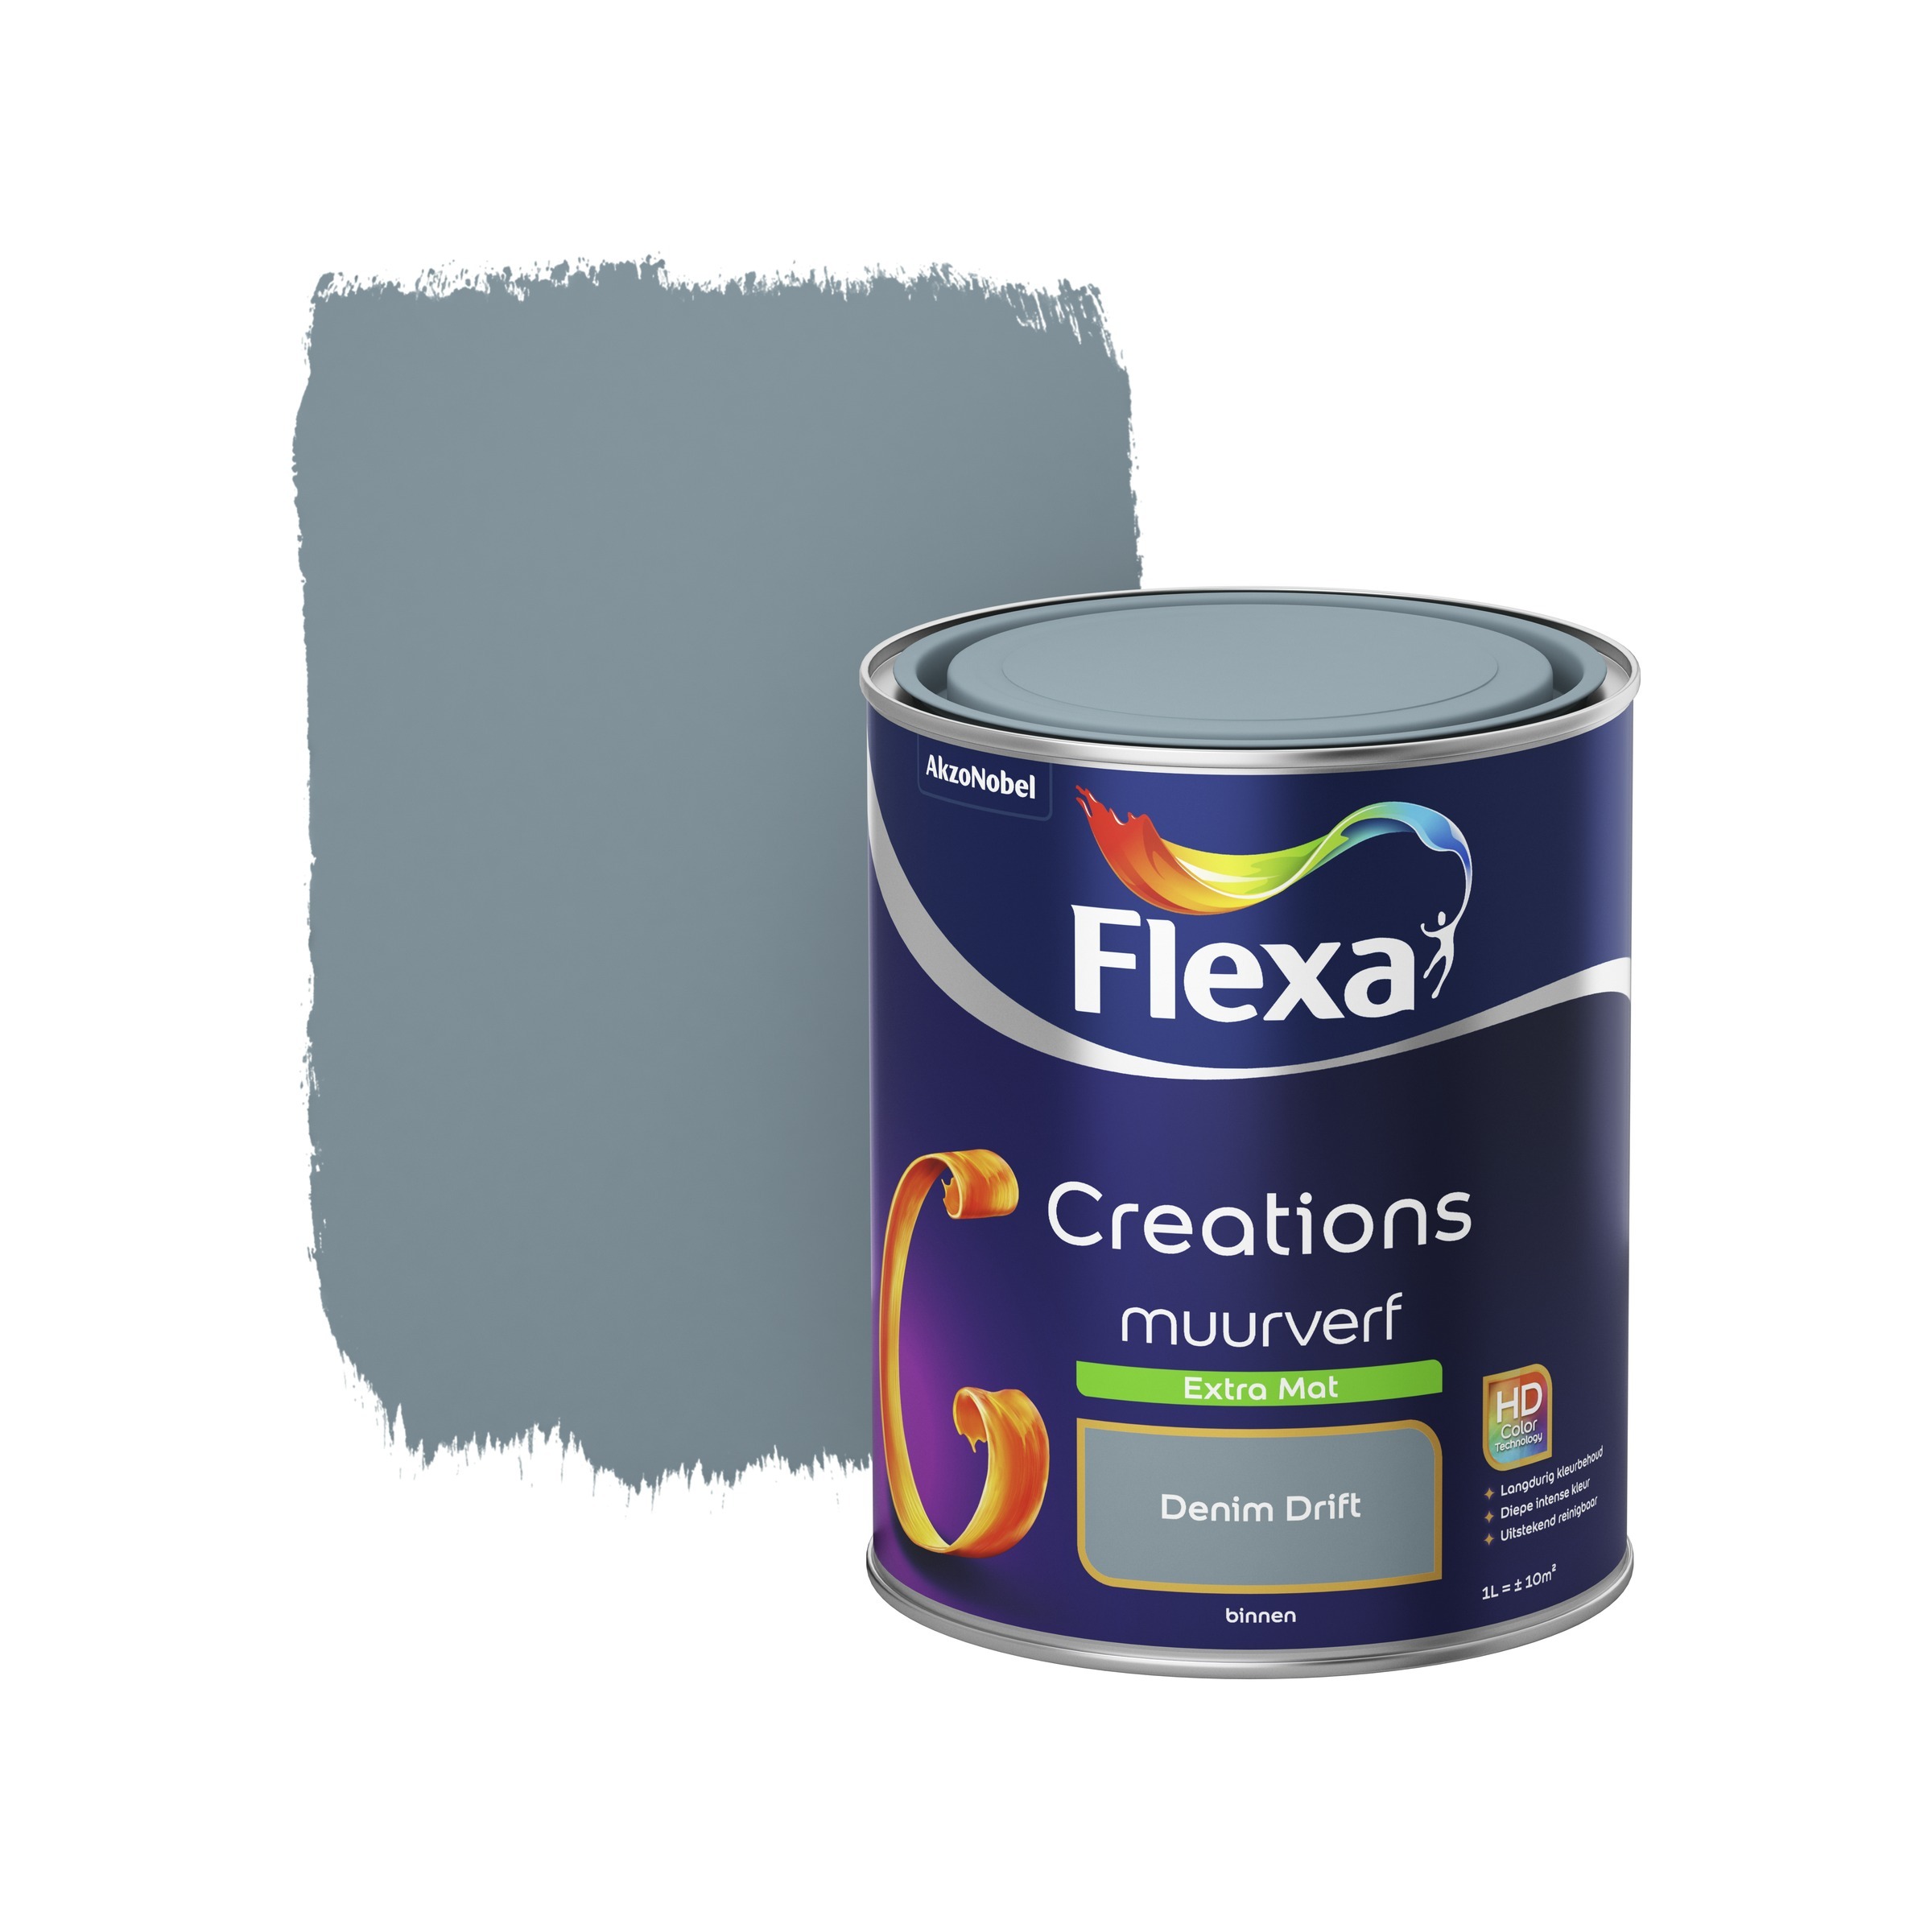 FLEXA Creations muurverf denim drift extra mat 1 liter